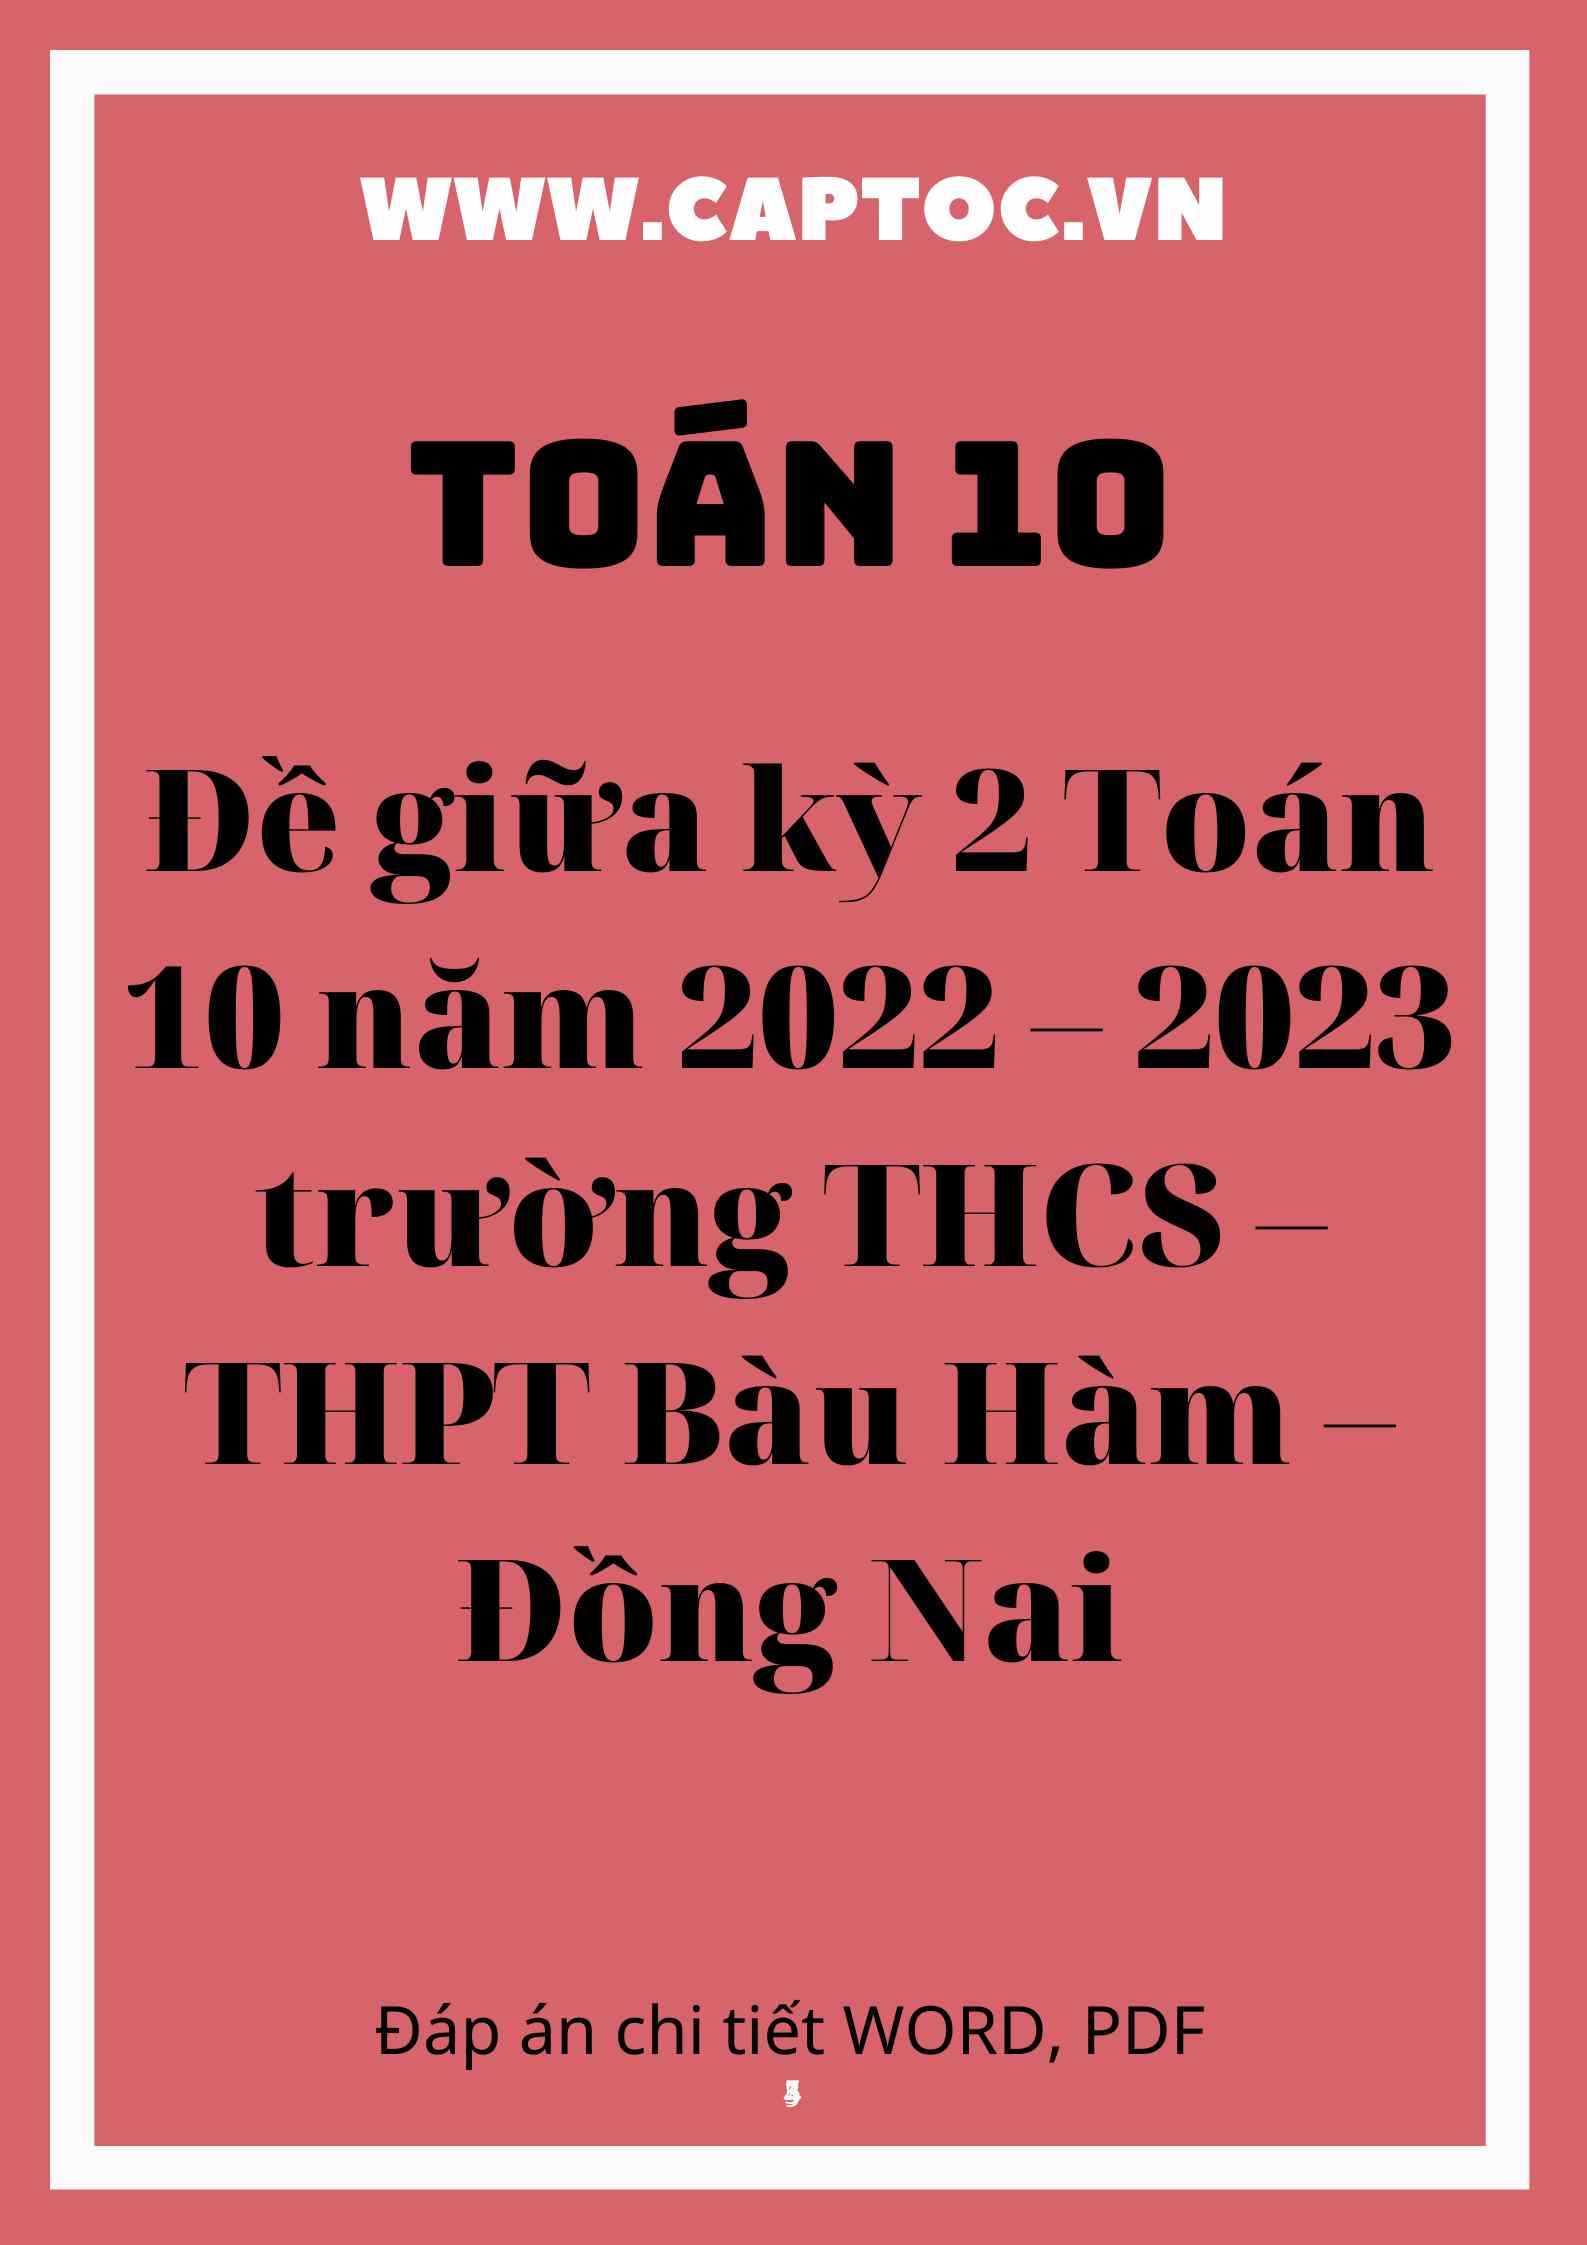 Đề giữa kỳ 2 Toán 10 năm 2022 – 2023 trường THCS – THPT Bàu Hàm – Đồng Nai